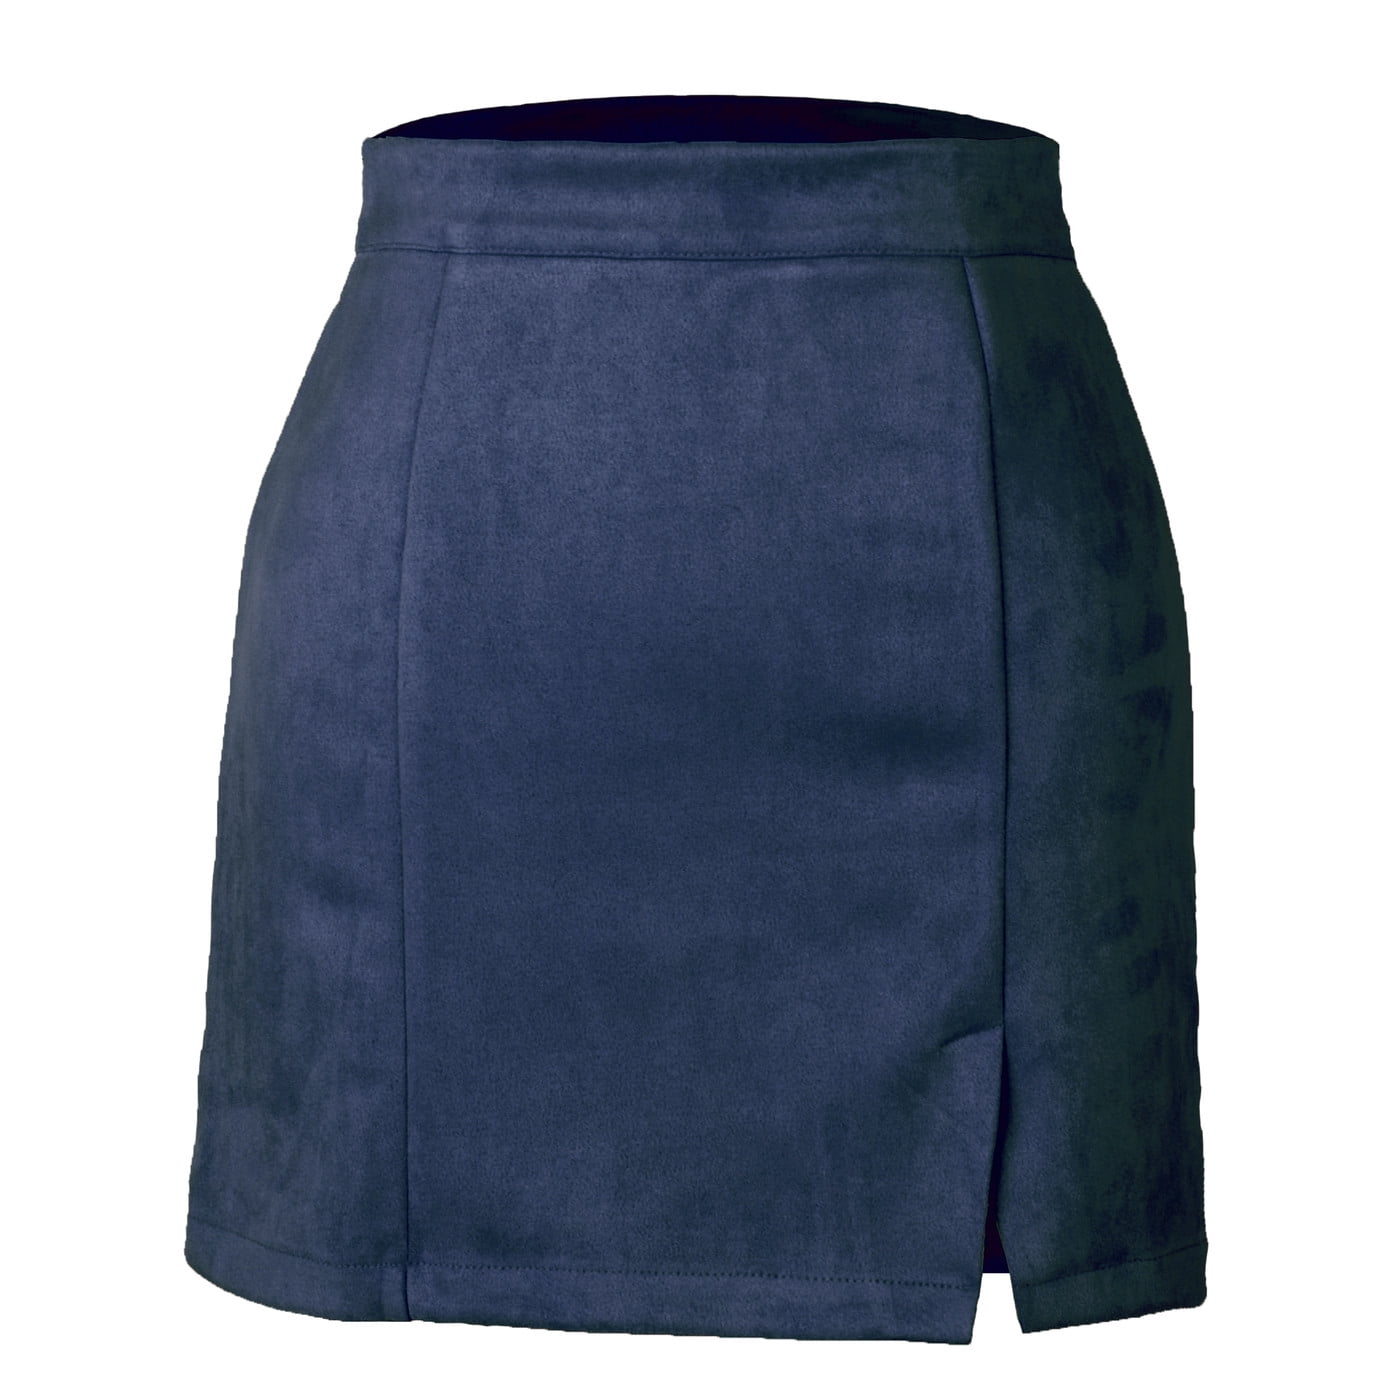 MBJ Womens Flirty Flare Skirt 